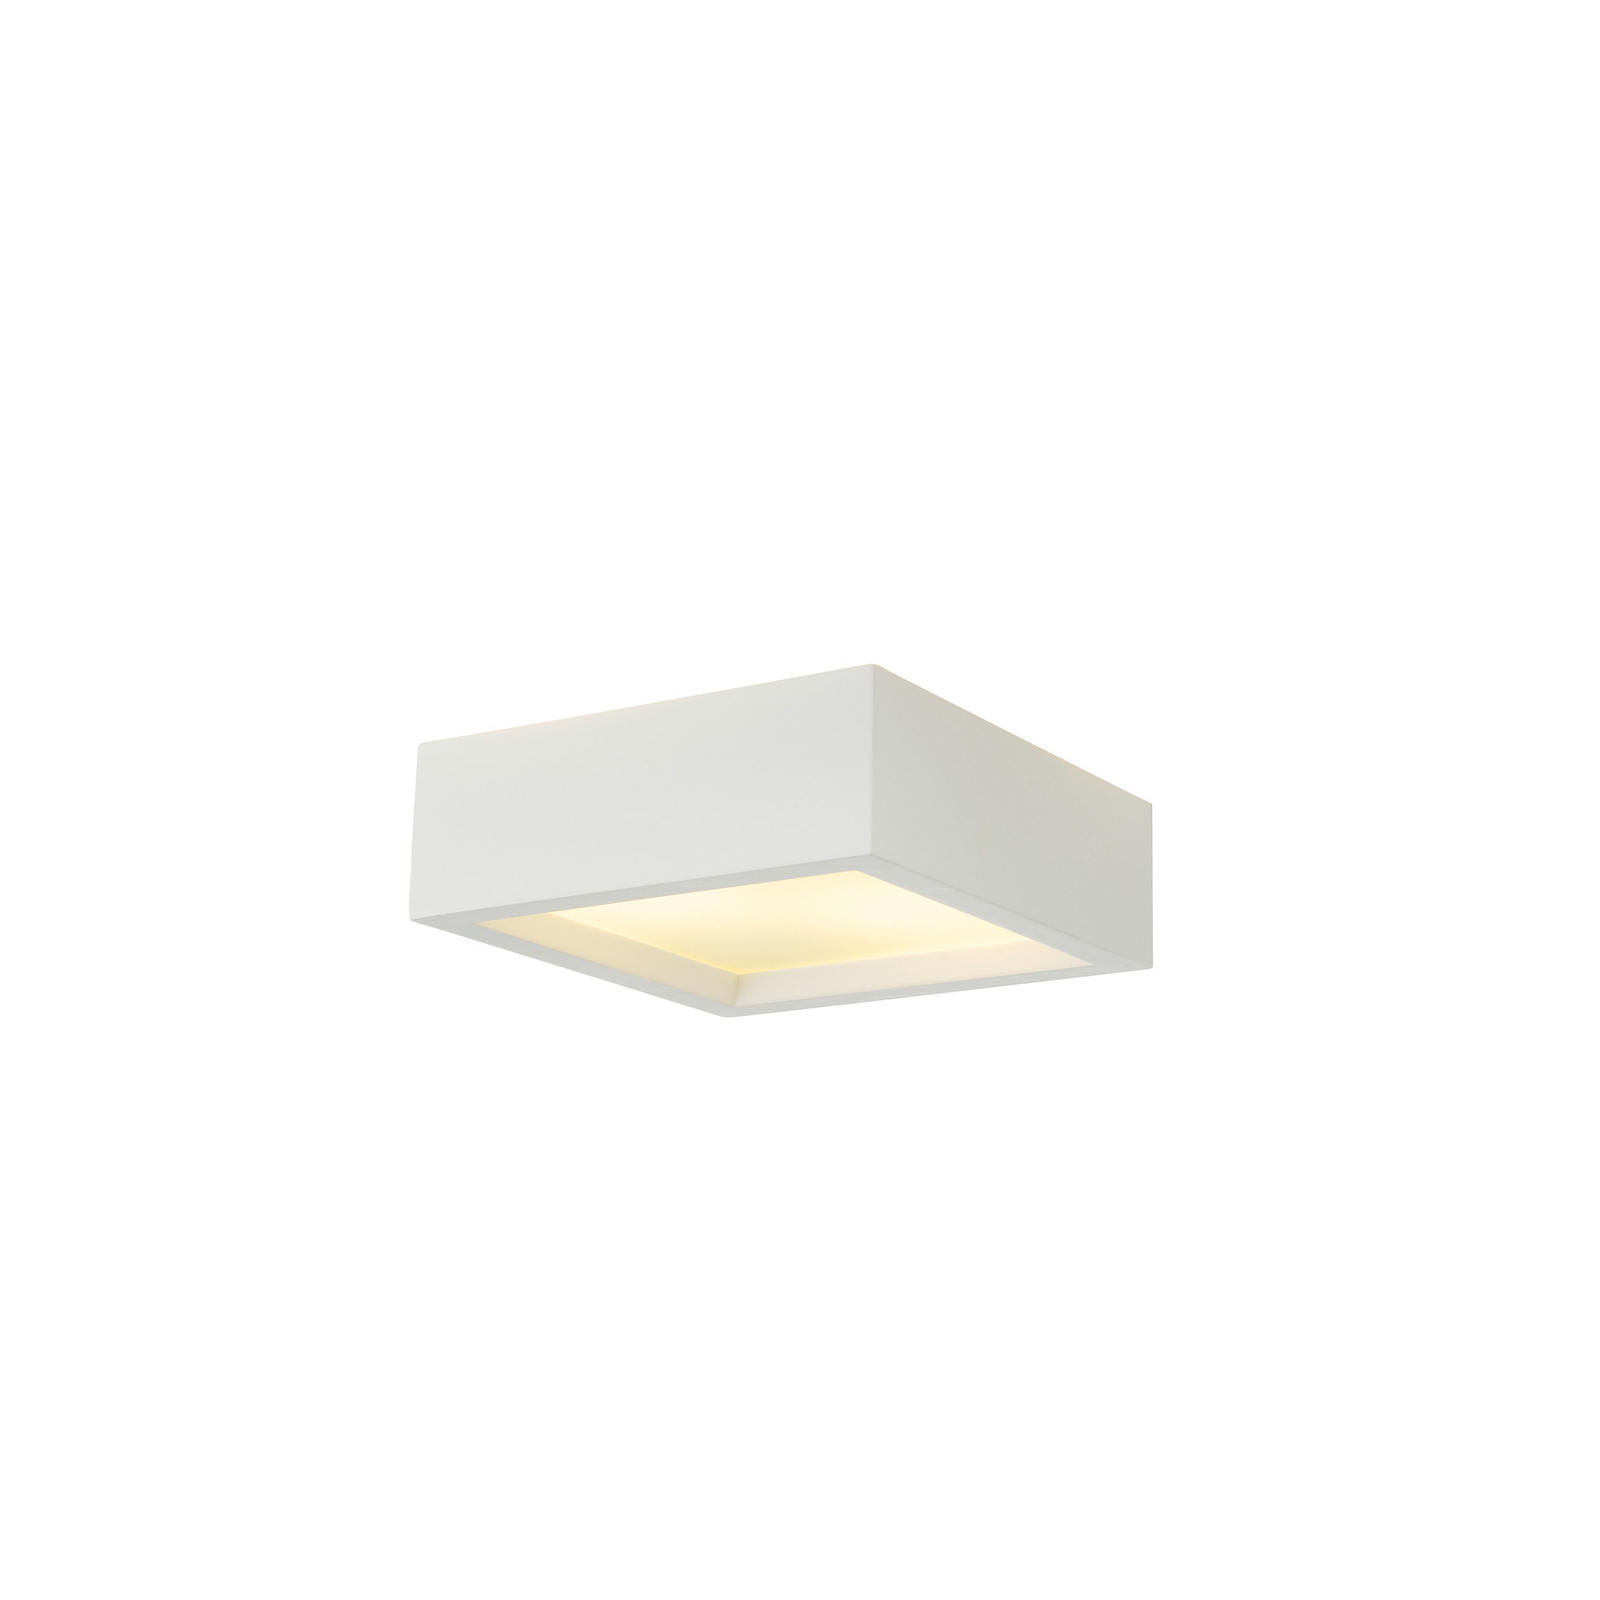 SLV stropna svetilka Plastra 104, bela, mavec, širina 25 cm